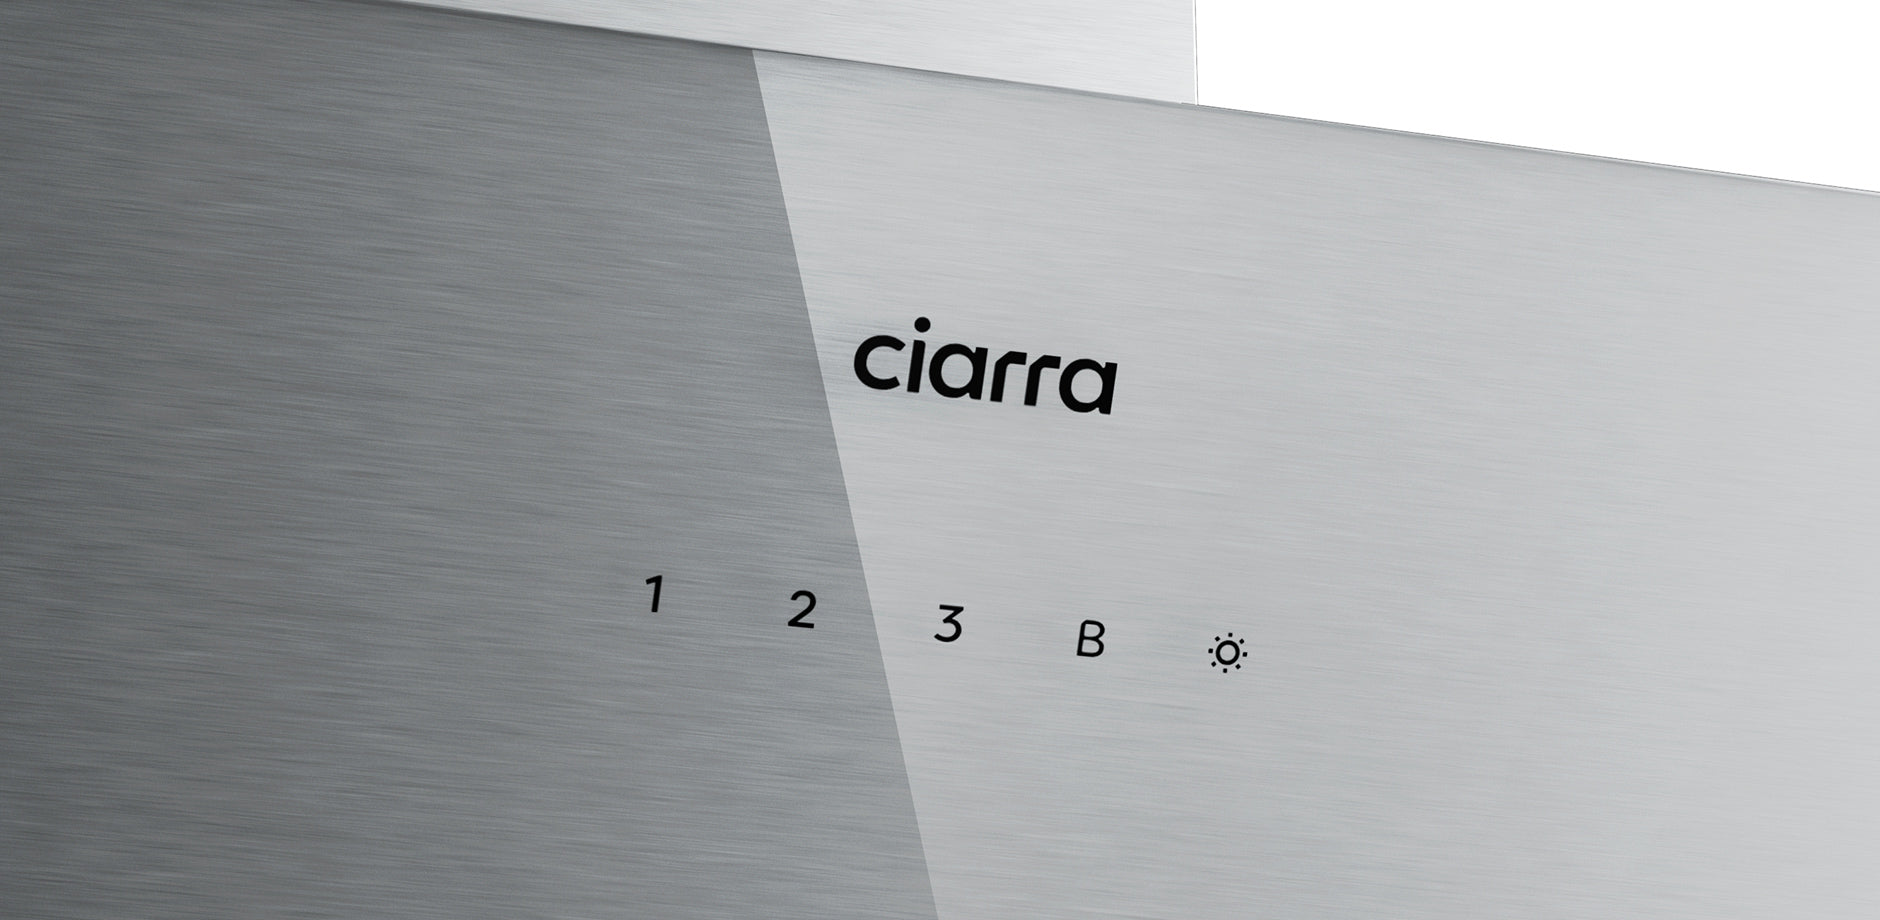 CIARRA Hotte Inclinée 60cm 750 m³/h Commande Tactile Classe A Blanc CBCW6736N-OW